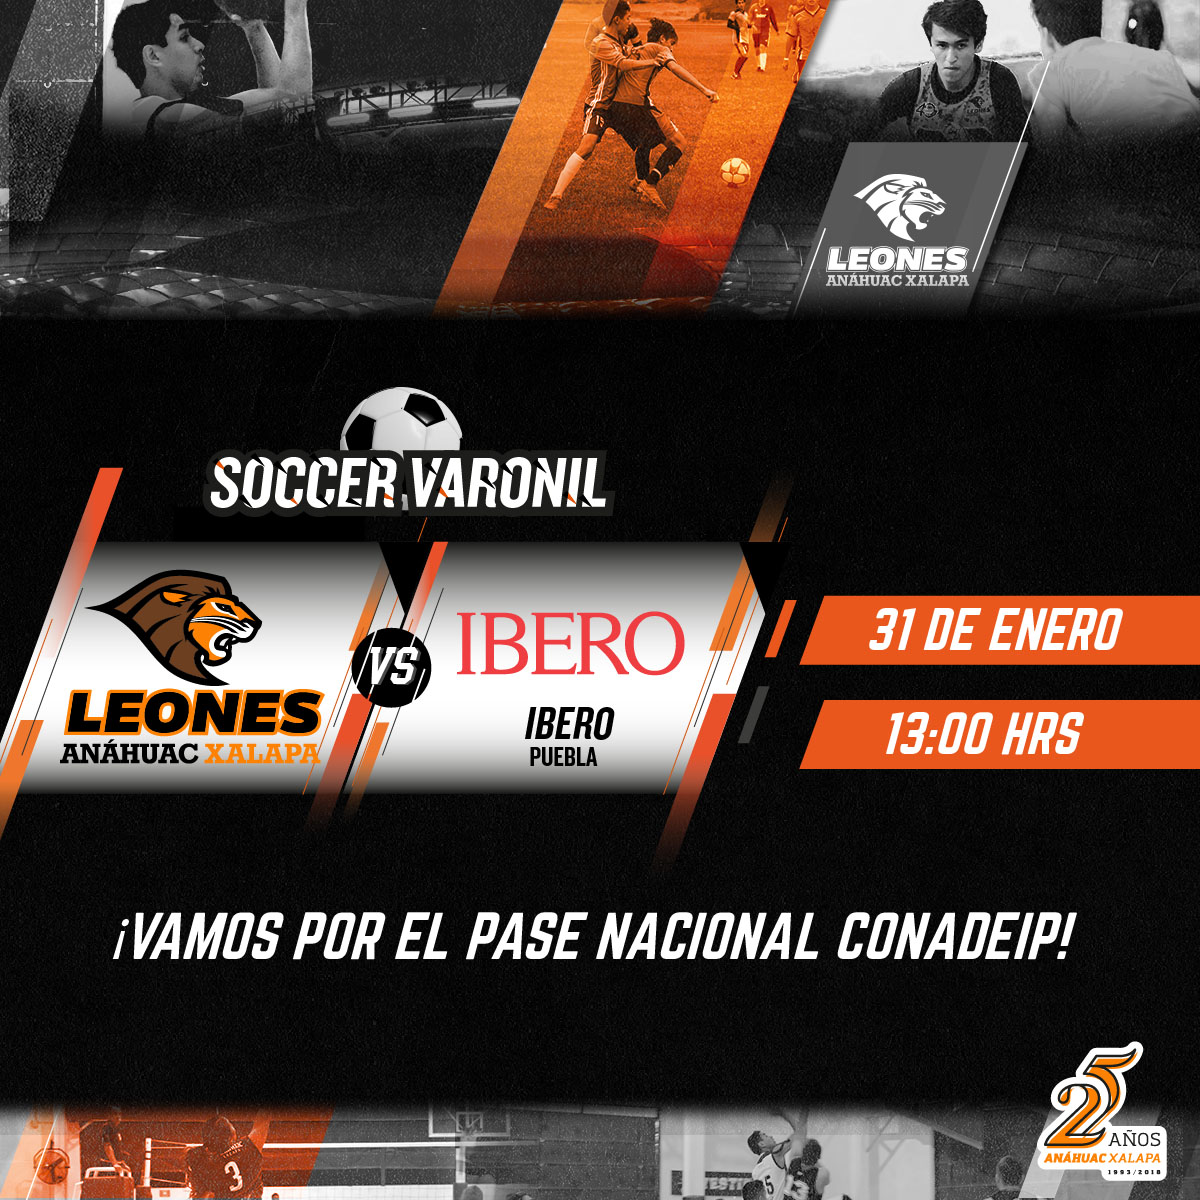 Fútbol Soccer Varonil: UAX vs Ibero Puebla